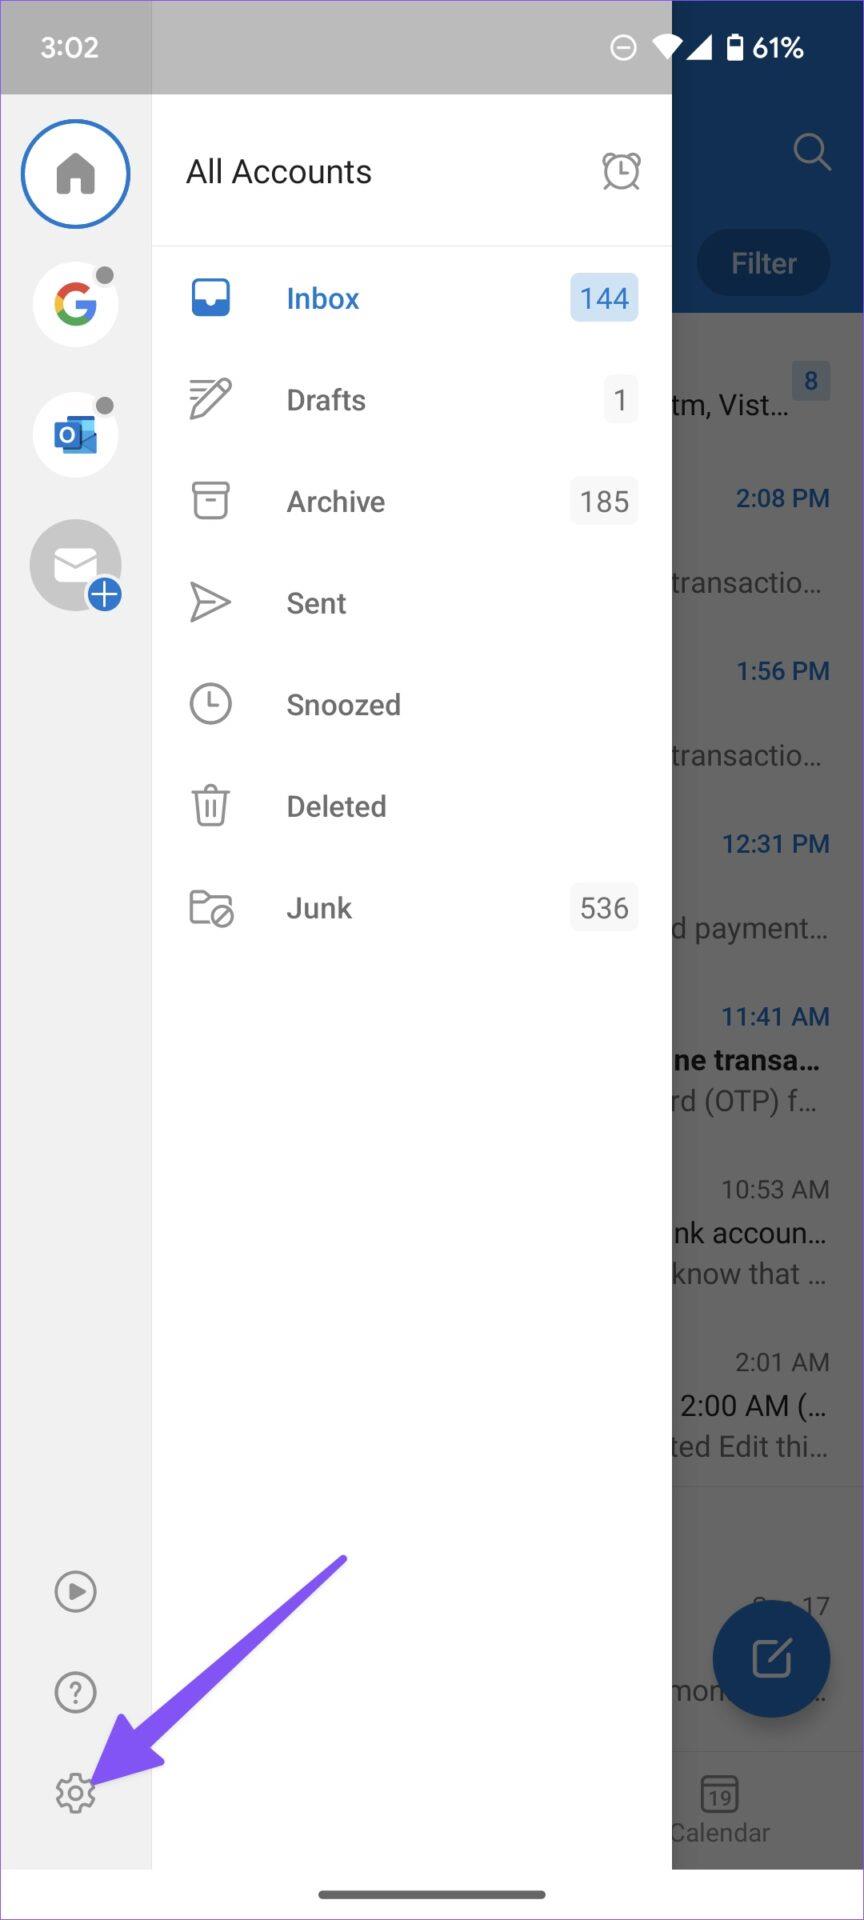 أفضل 9 طرق لإصلاح عدم تلقي Microsoft Outlook رسائل البريد الإلكتروني على نظام Android